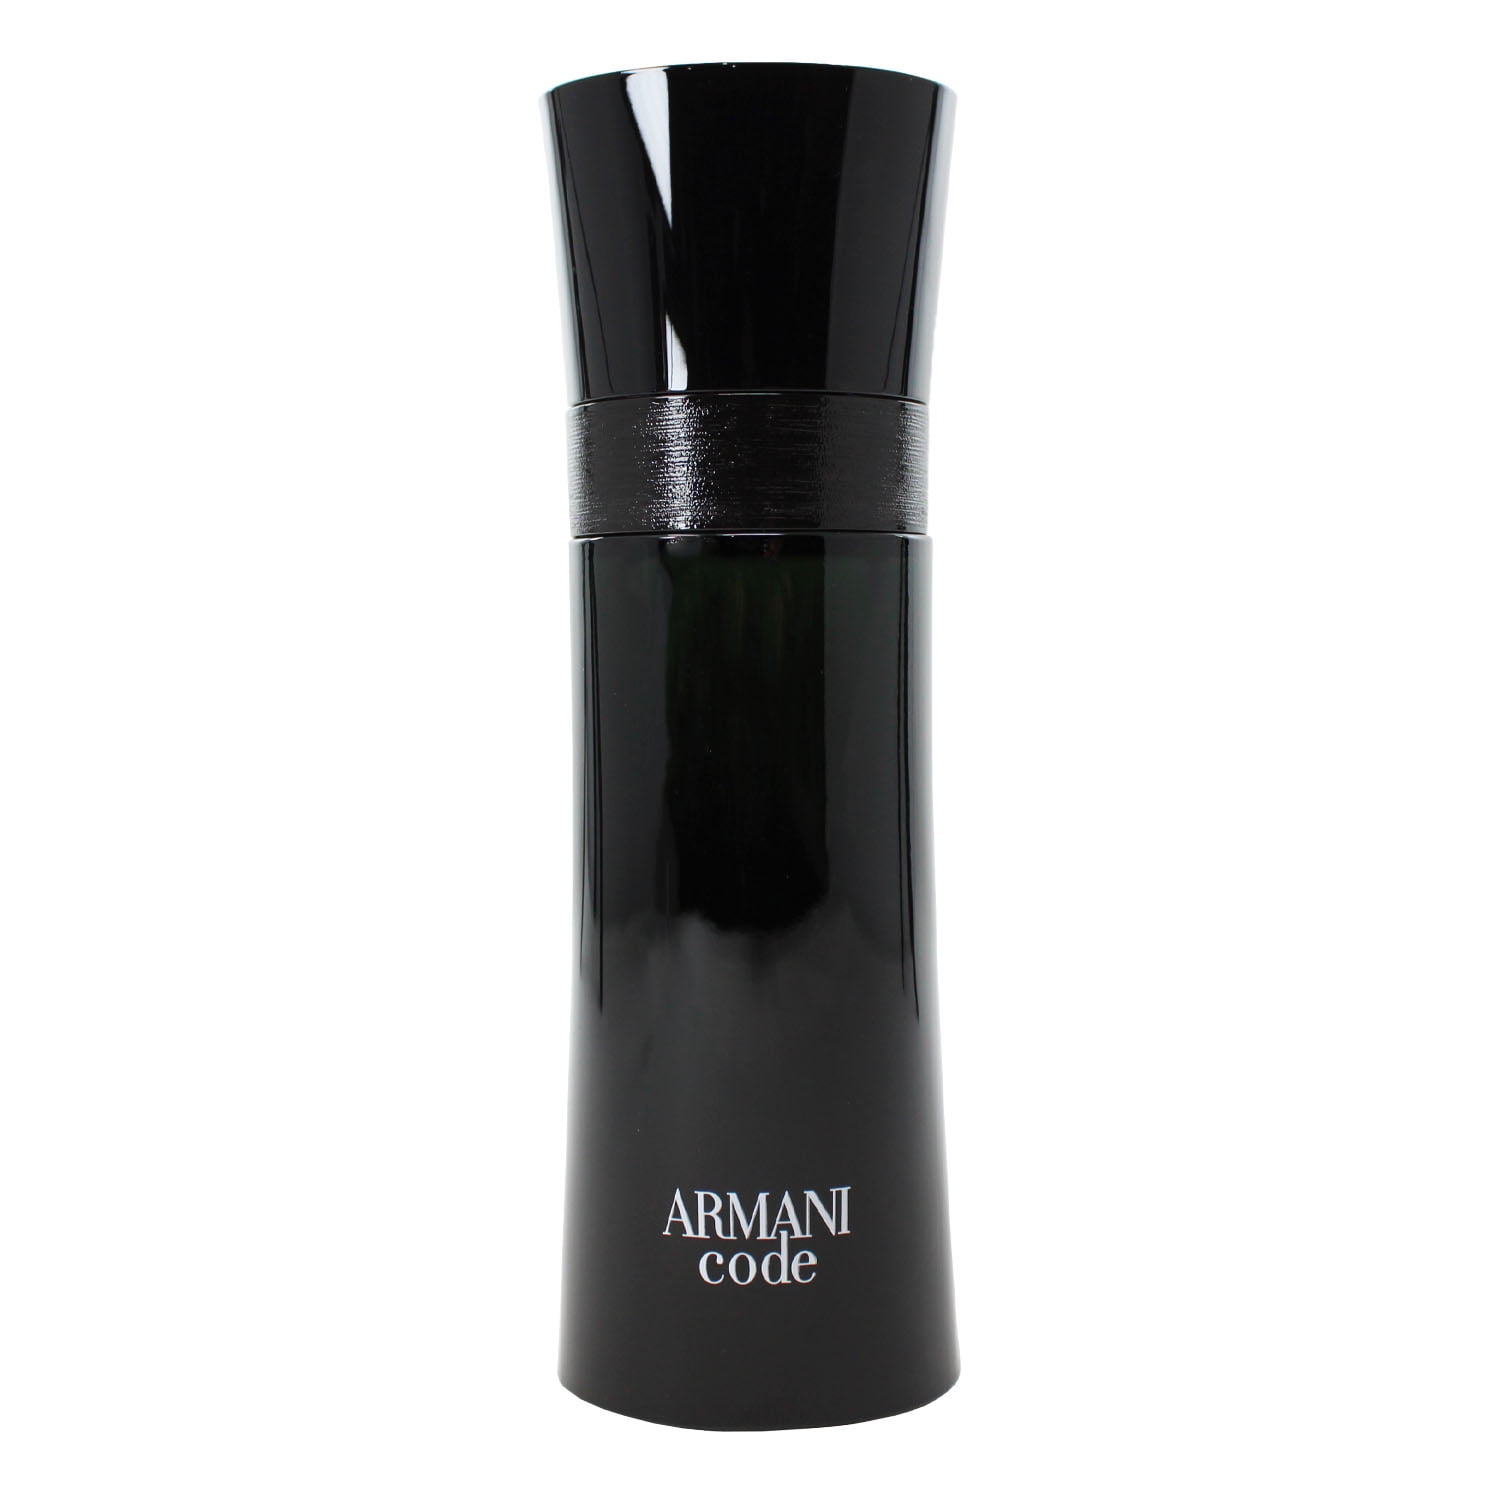 The original Armani cologne for men,  oz Eau De Toilette Spray -  